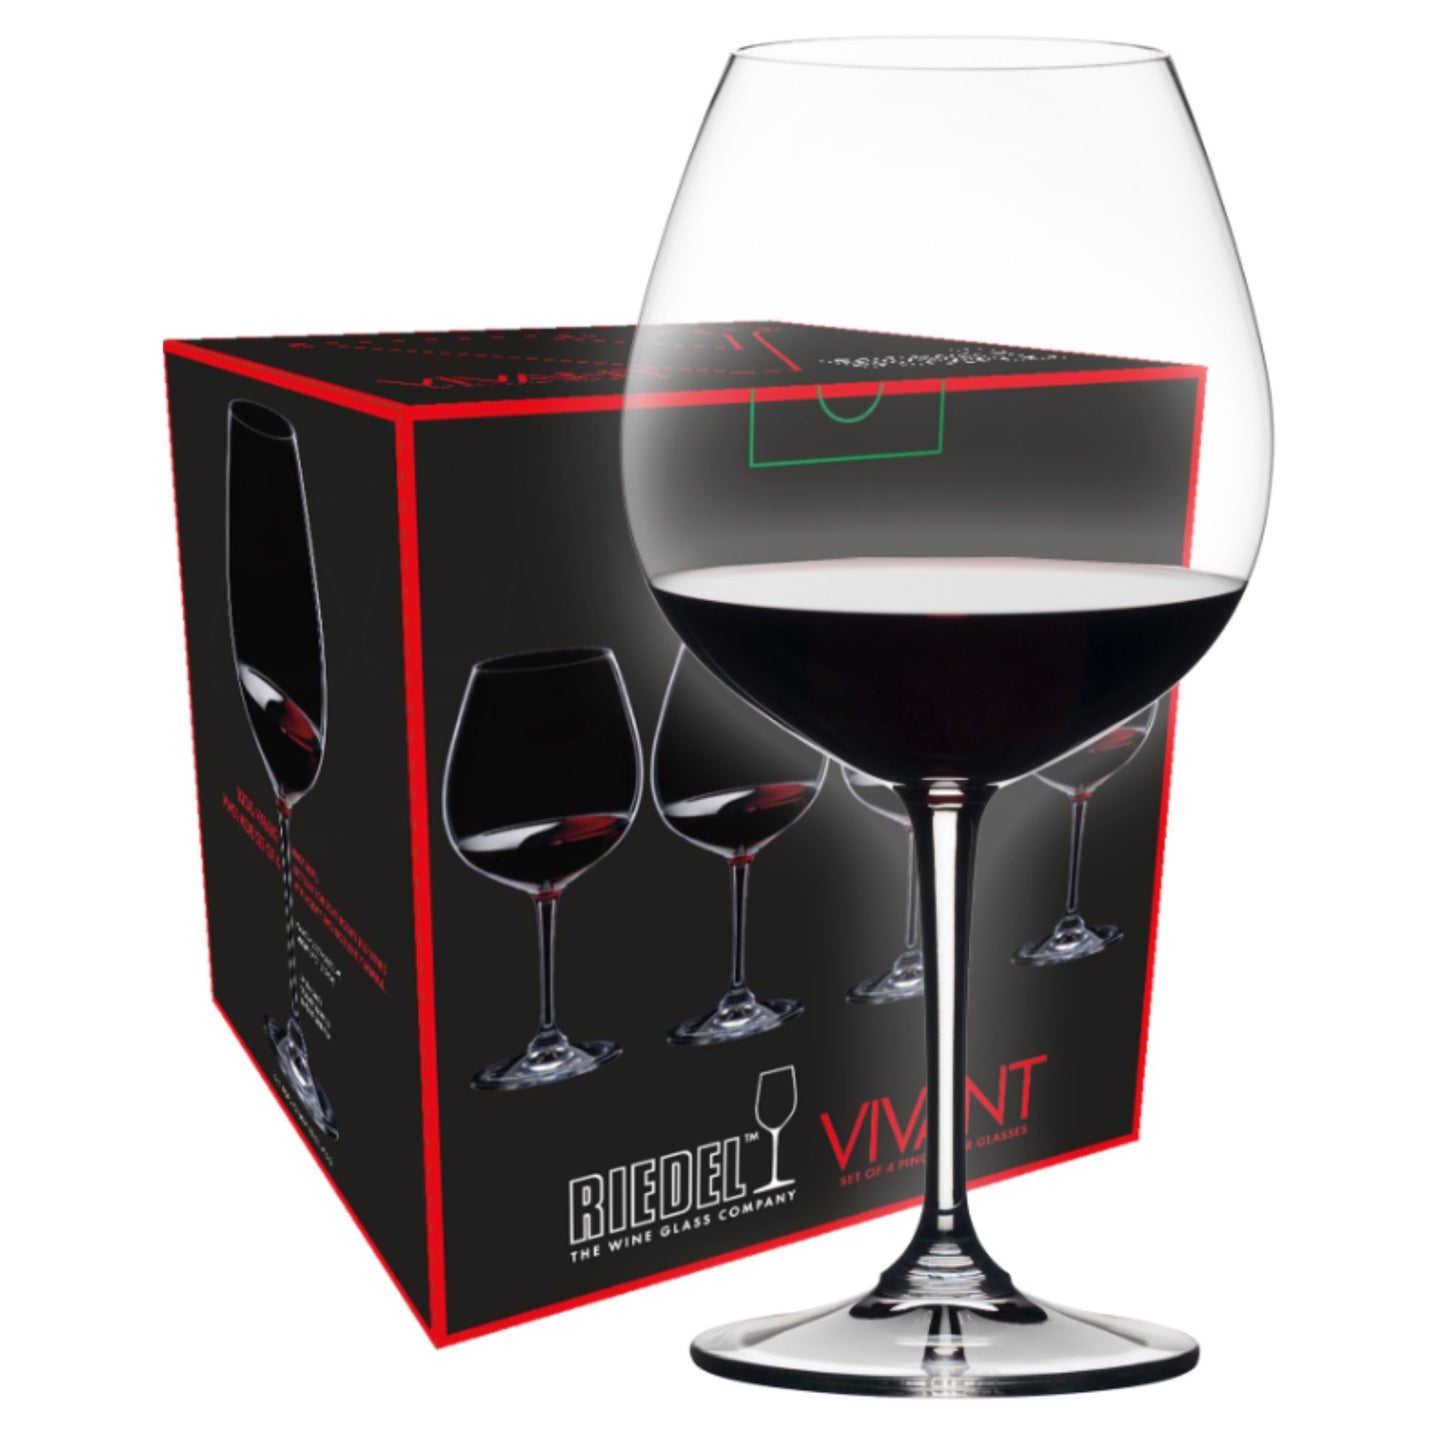 Riedel Vivant Pinot Noir wijnglas (set van 4 voor € 50,00)